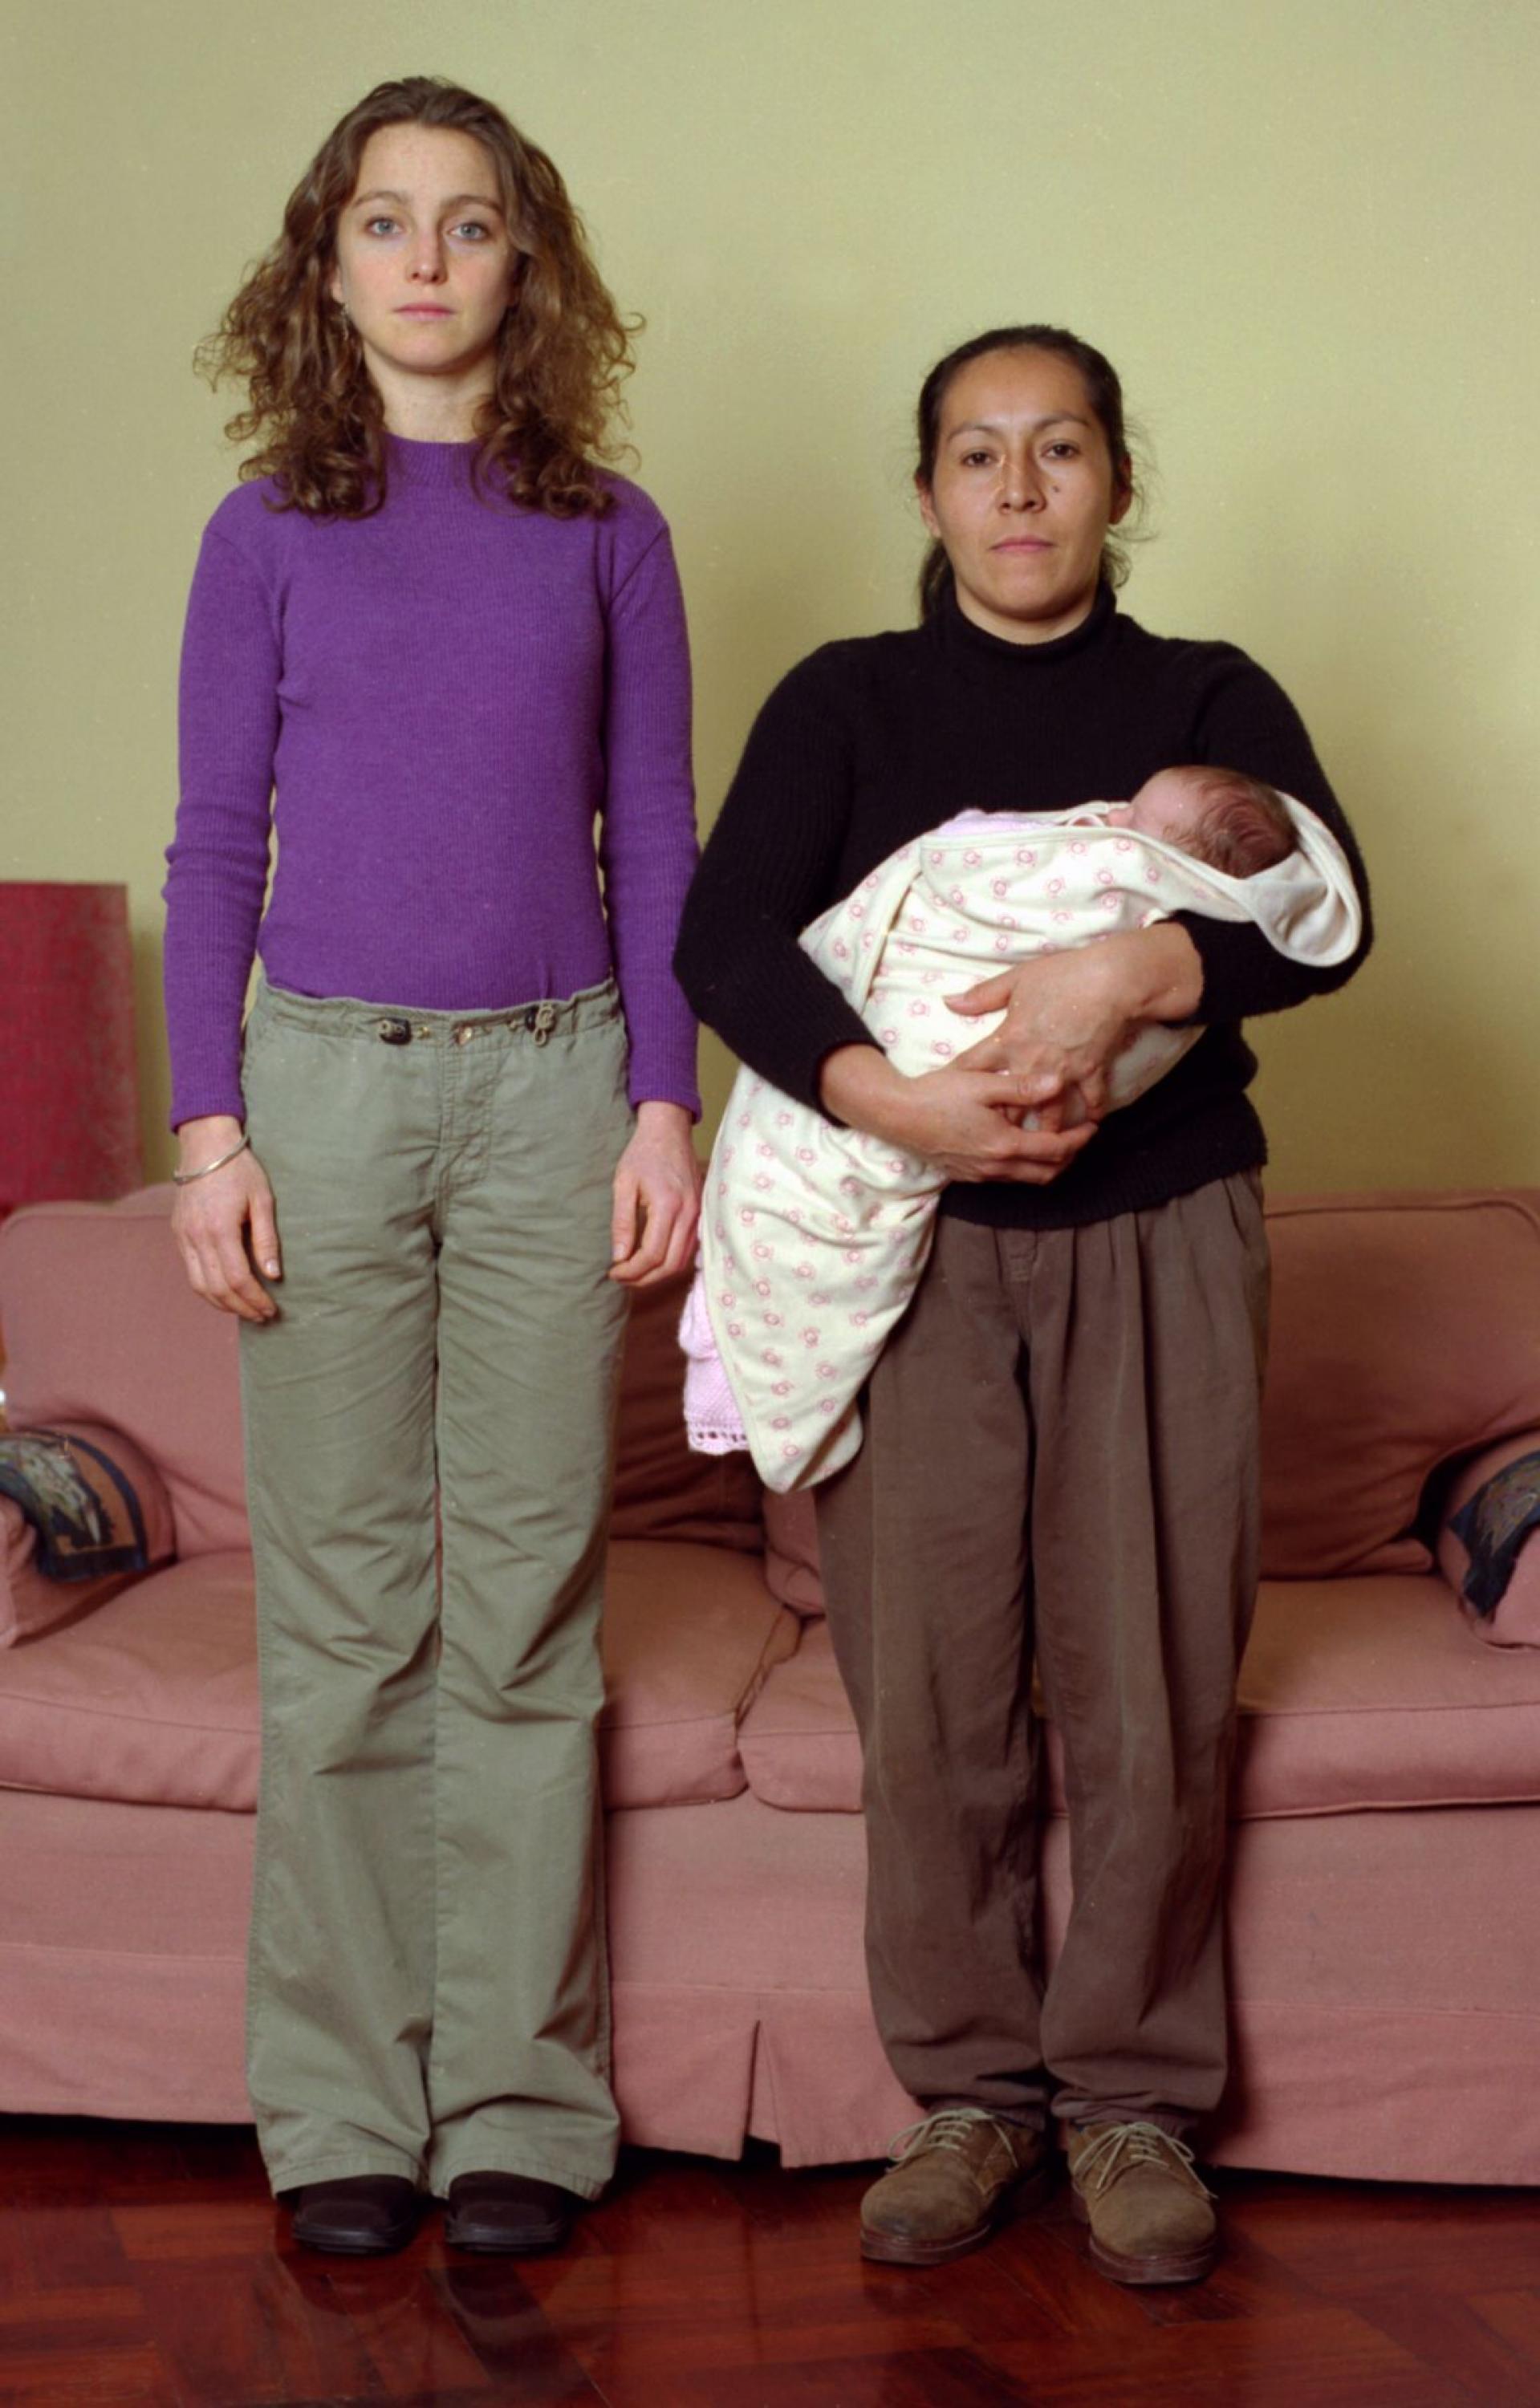 Zwei Frauen stehen nebeneinander und schauen in die Kamera. Links eine junge schmale Frau mit blonden Locken, rechts eine kleinere, aeltere, braunhaeutige Frau mit einem Baby im Arm.